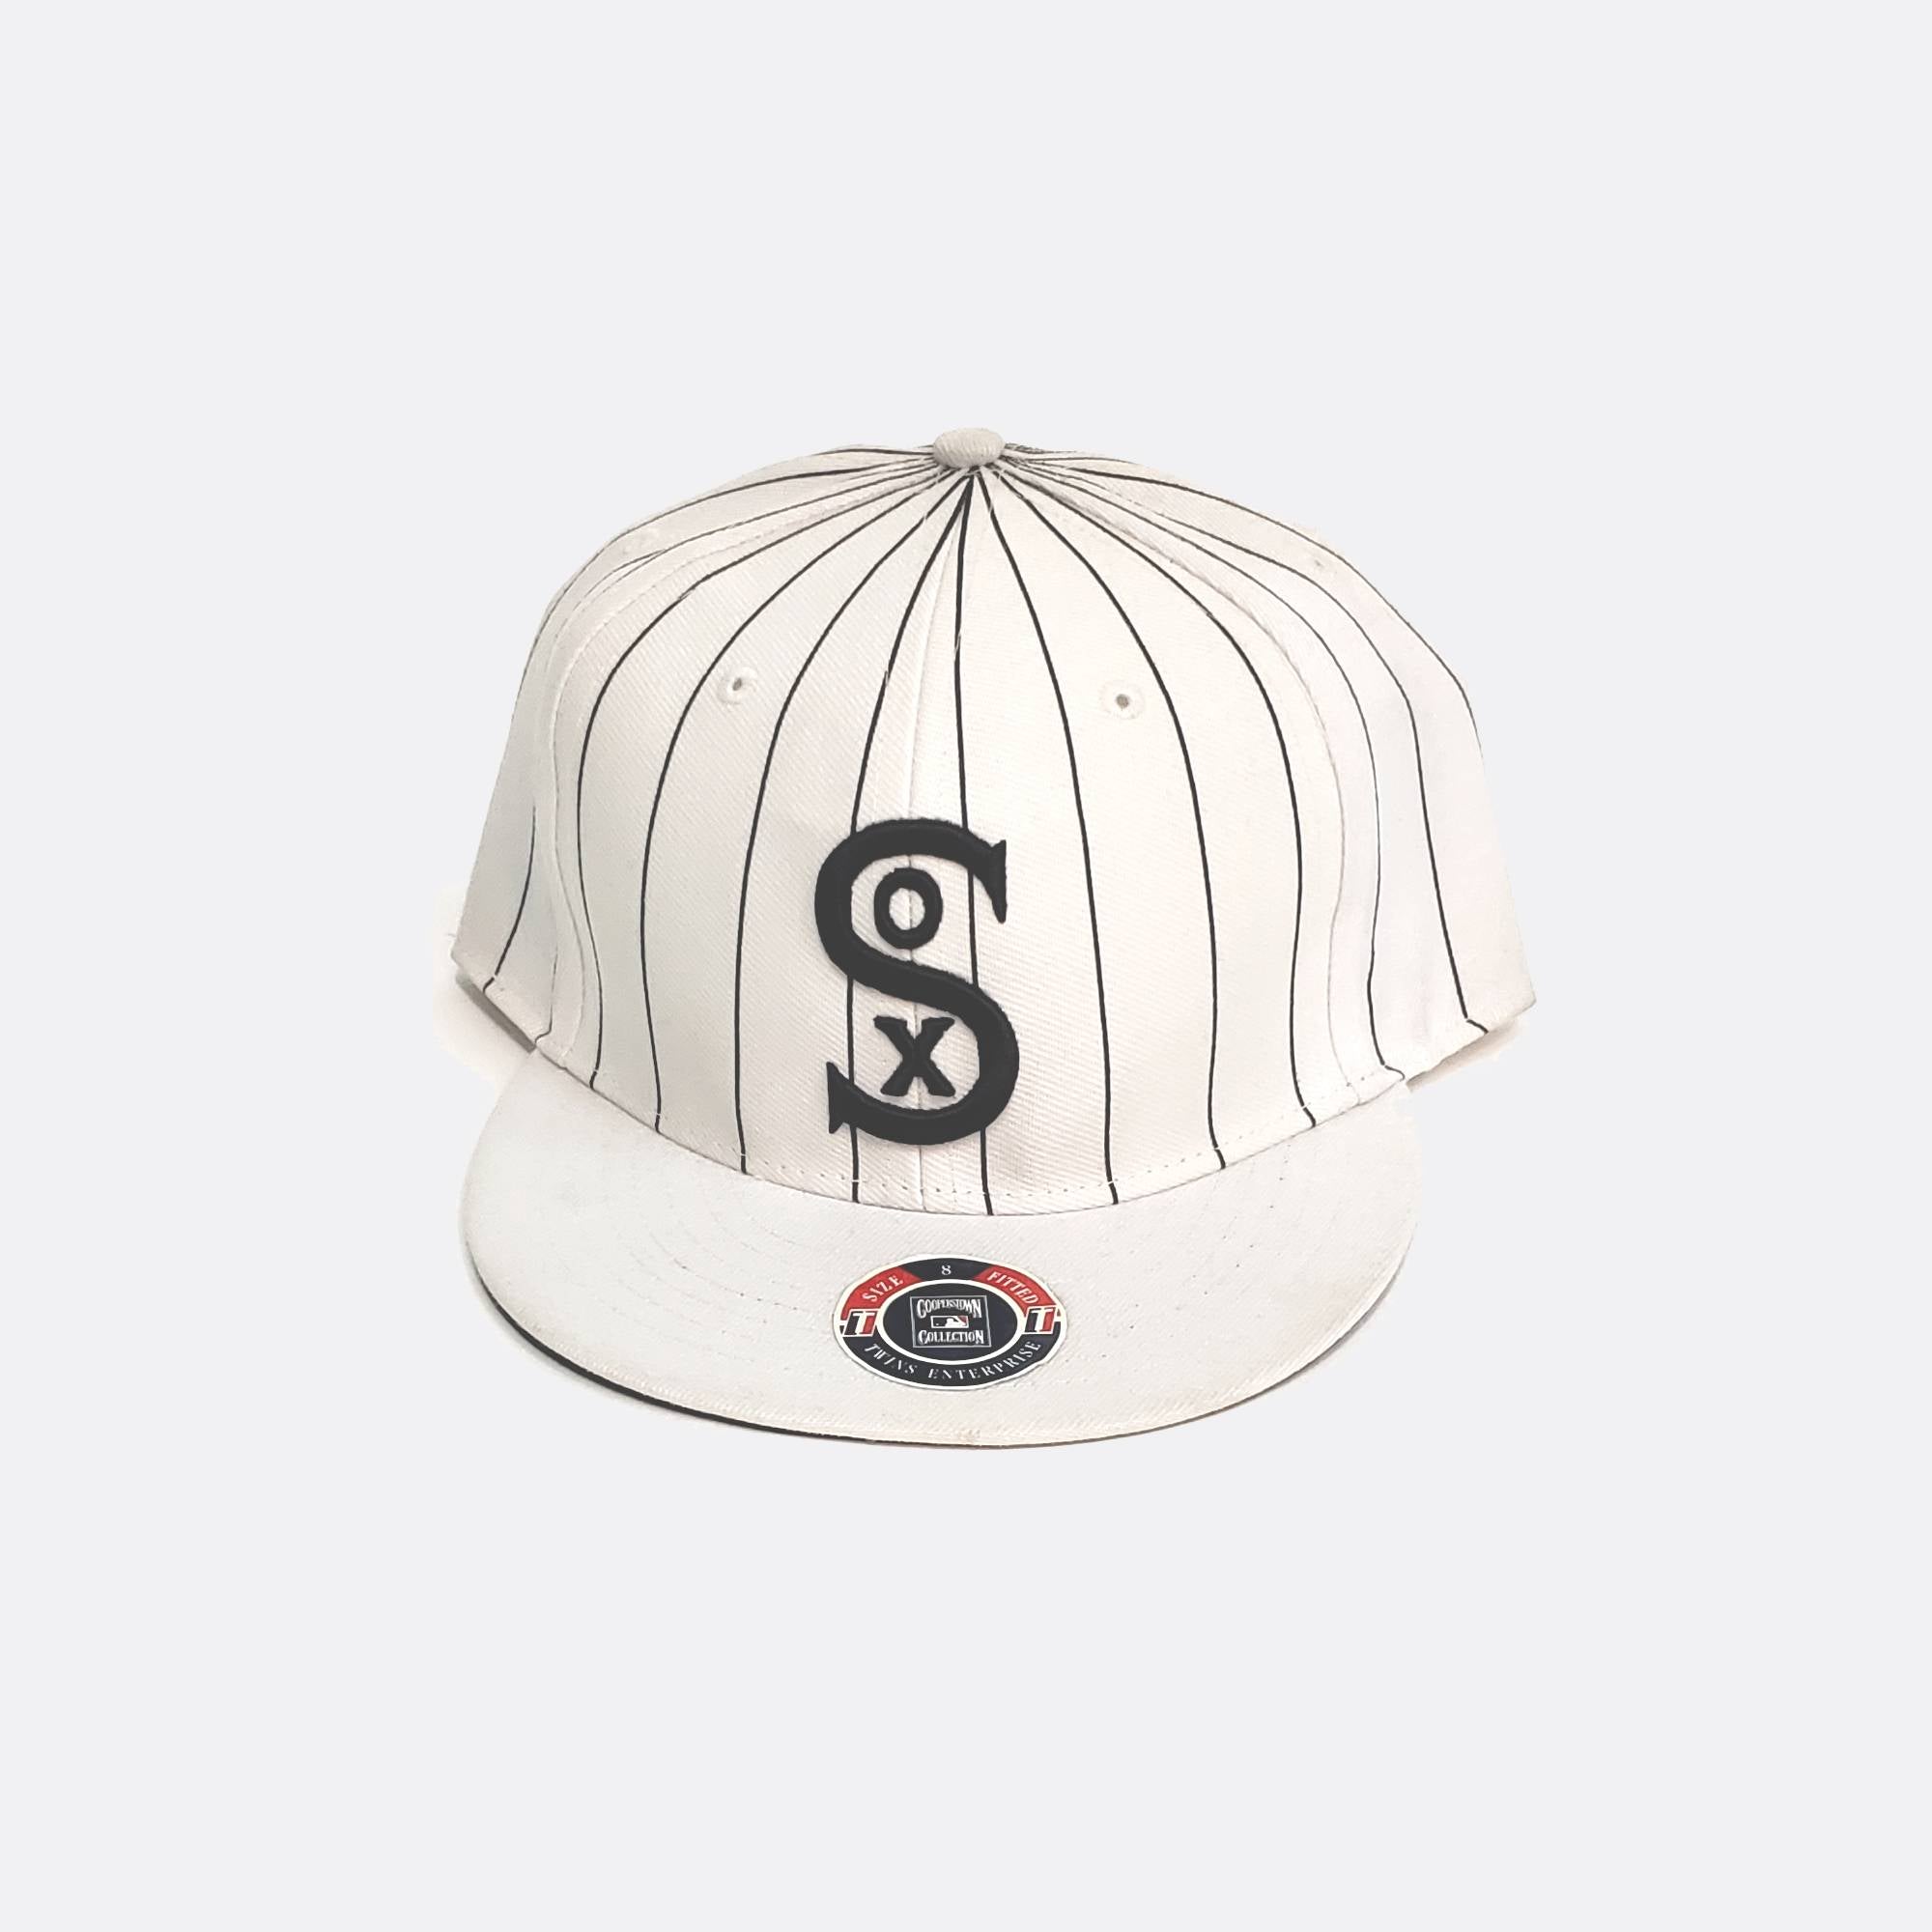 Chicago white sox vintage cap